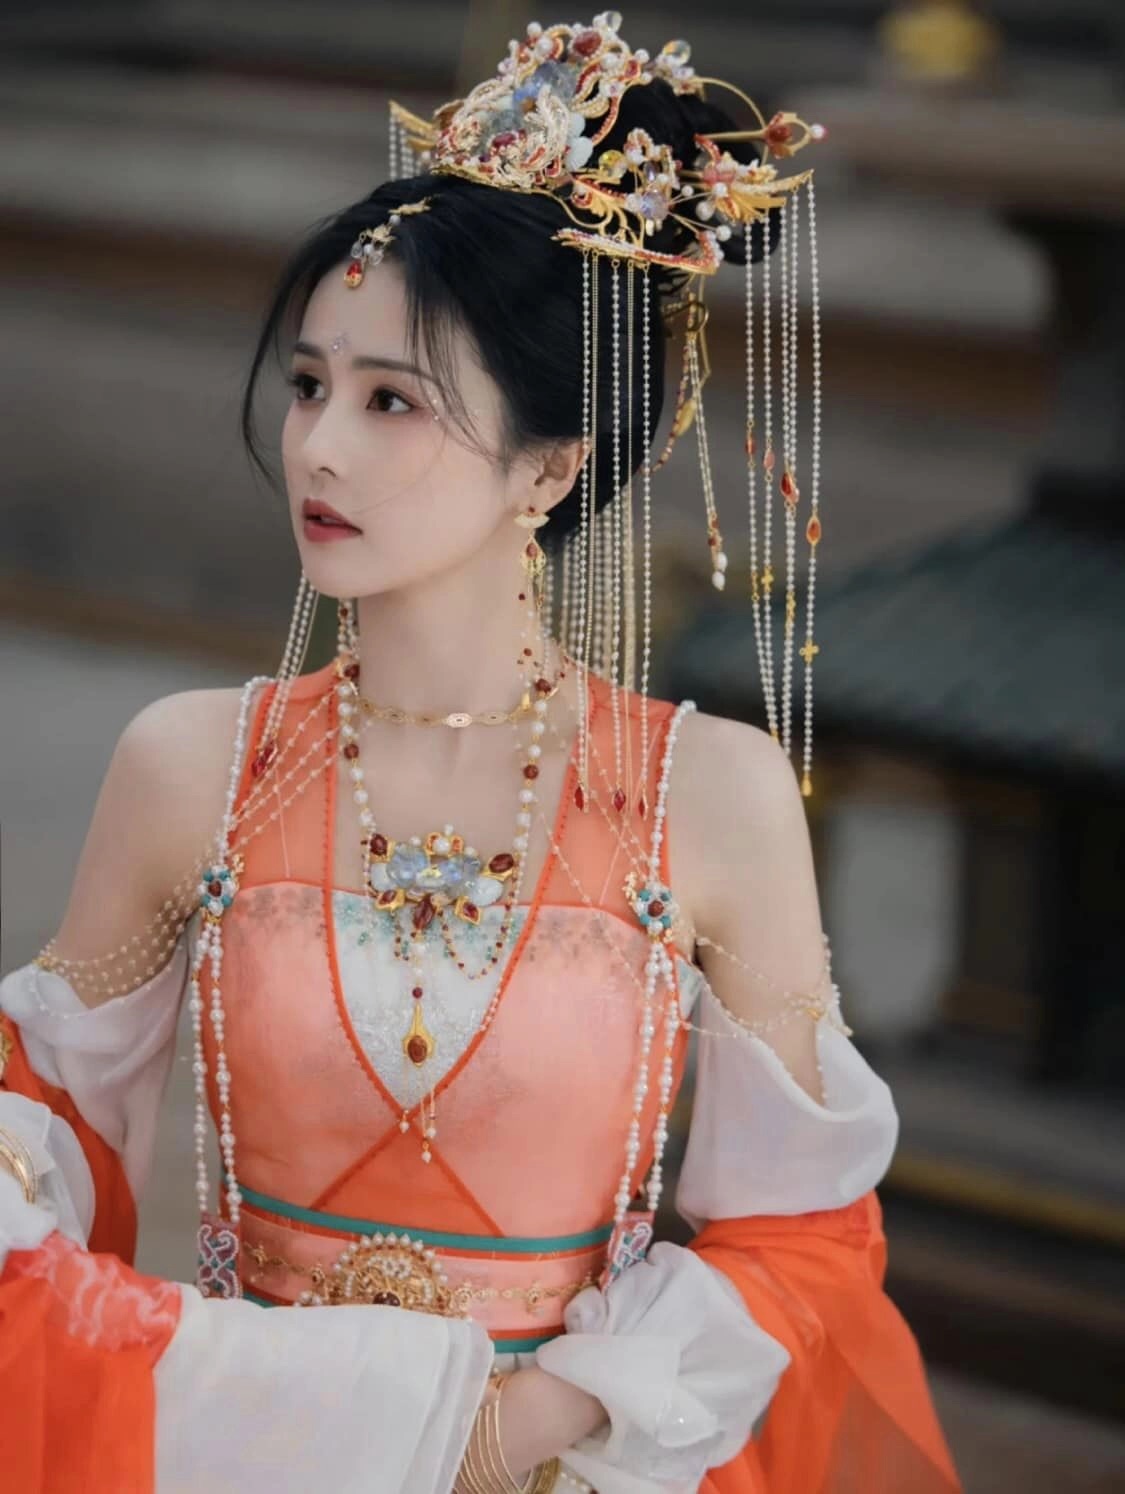 Bạch Lộc chính thức 'diễm áp' nhan sắc nữ phụ Trần Đô Linh với tạo hình nữ thần Đôn Hoàng trong Trường Nguyệt Tẫn Minh  - Ảnh 4